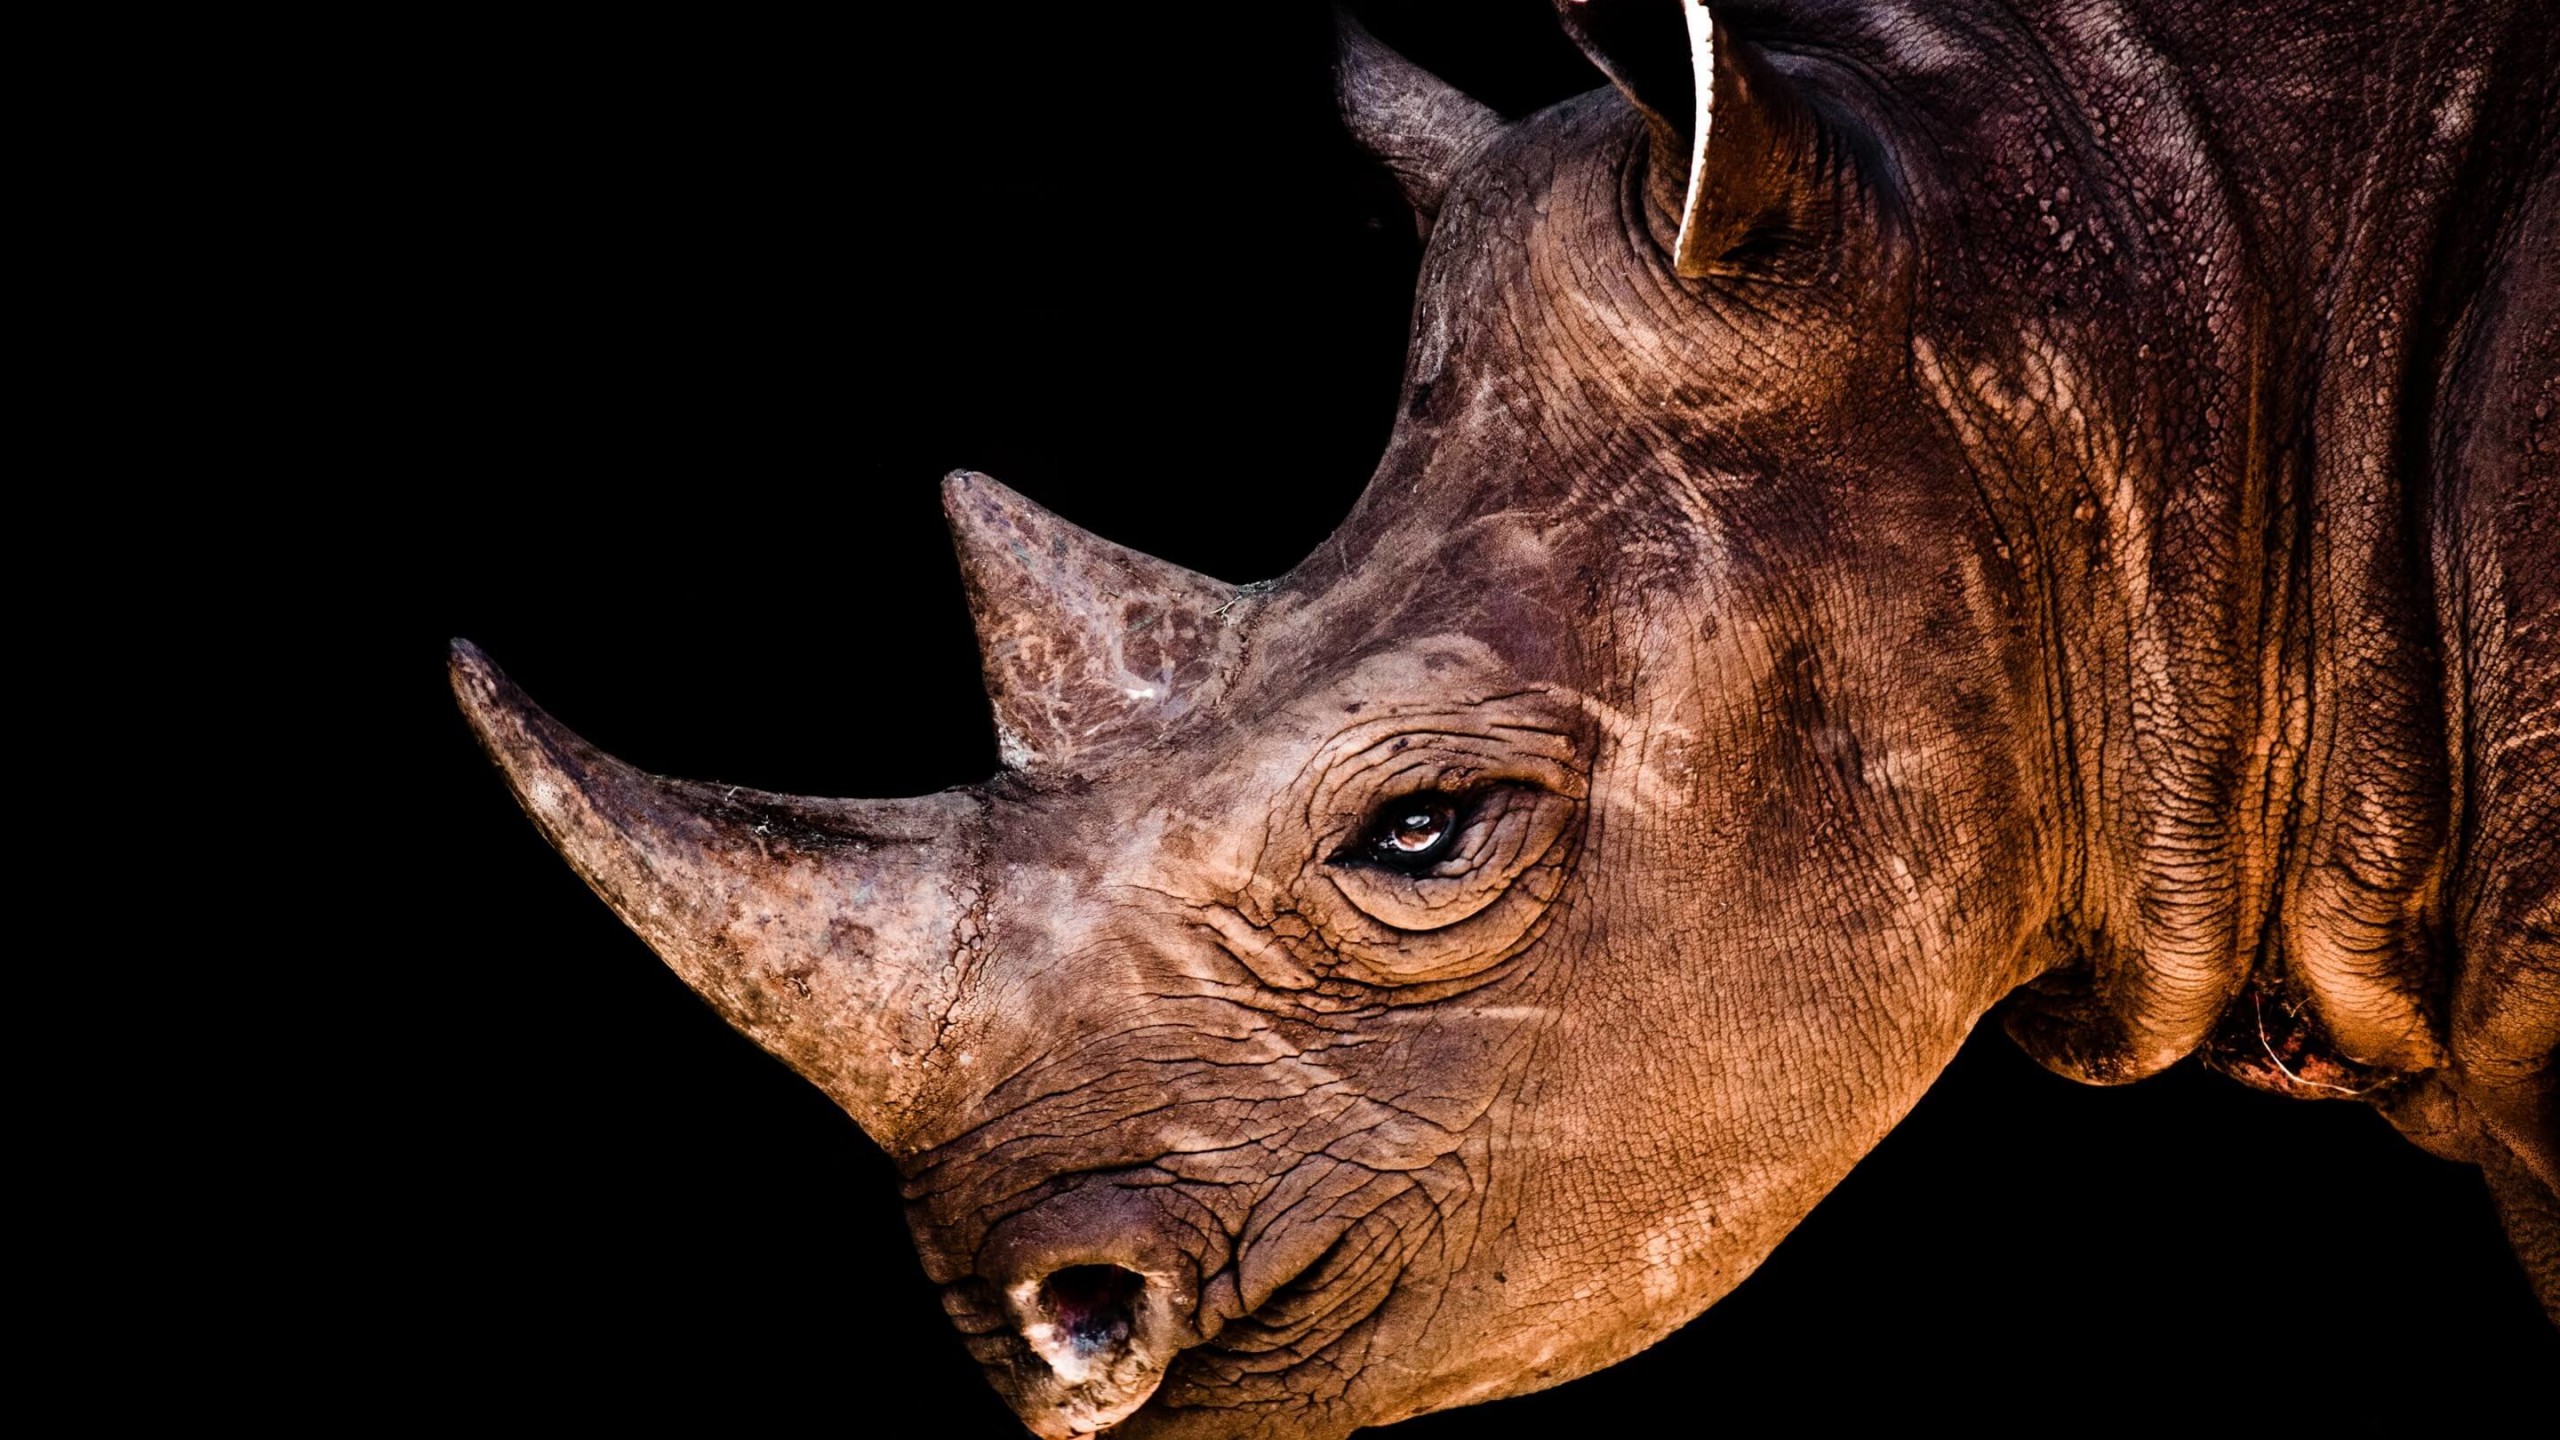 Rhinoceros Portrait Wallpaper for Desktop 2560x1440